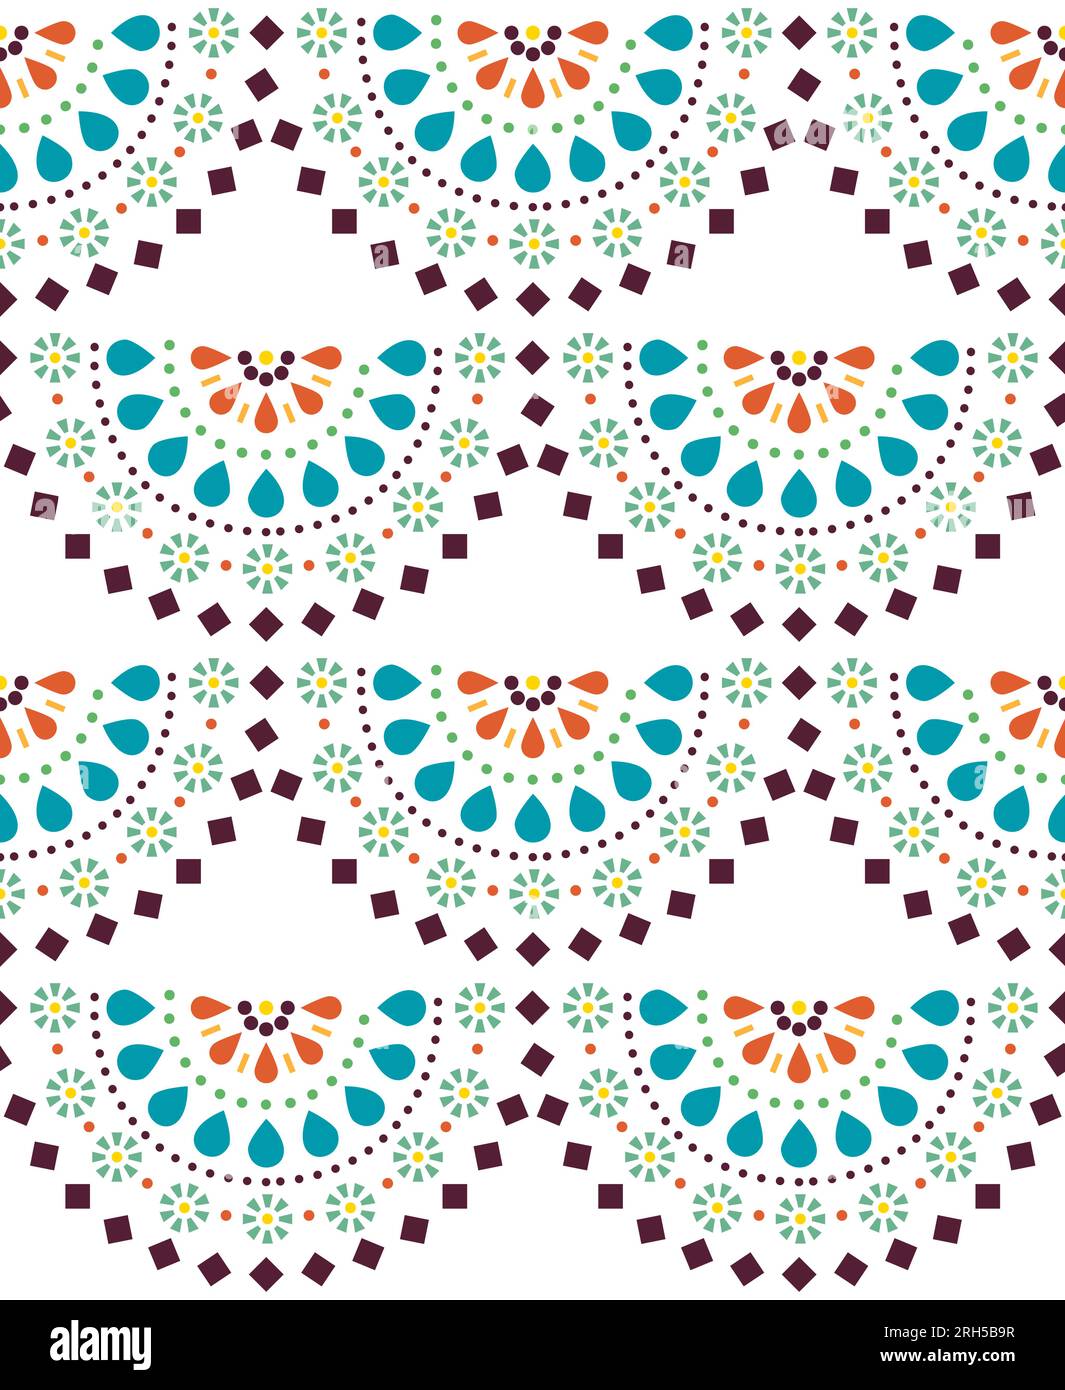 Modèle sans couture de vecteur d'art folklorique mexicain avec des demi mandalas, des fleurs et des formes géométriques Illustration de Vecteur